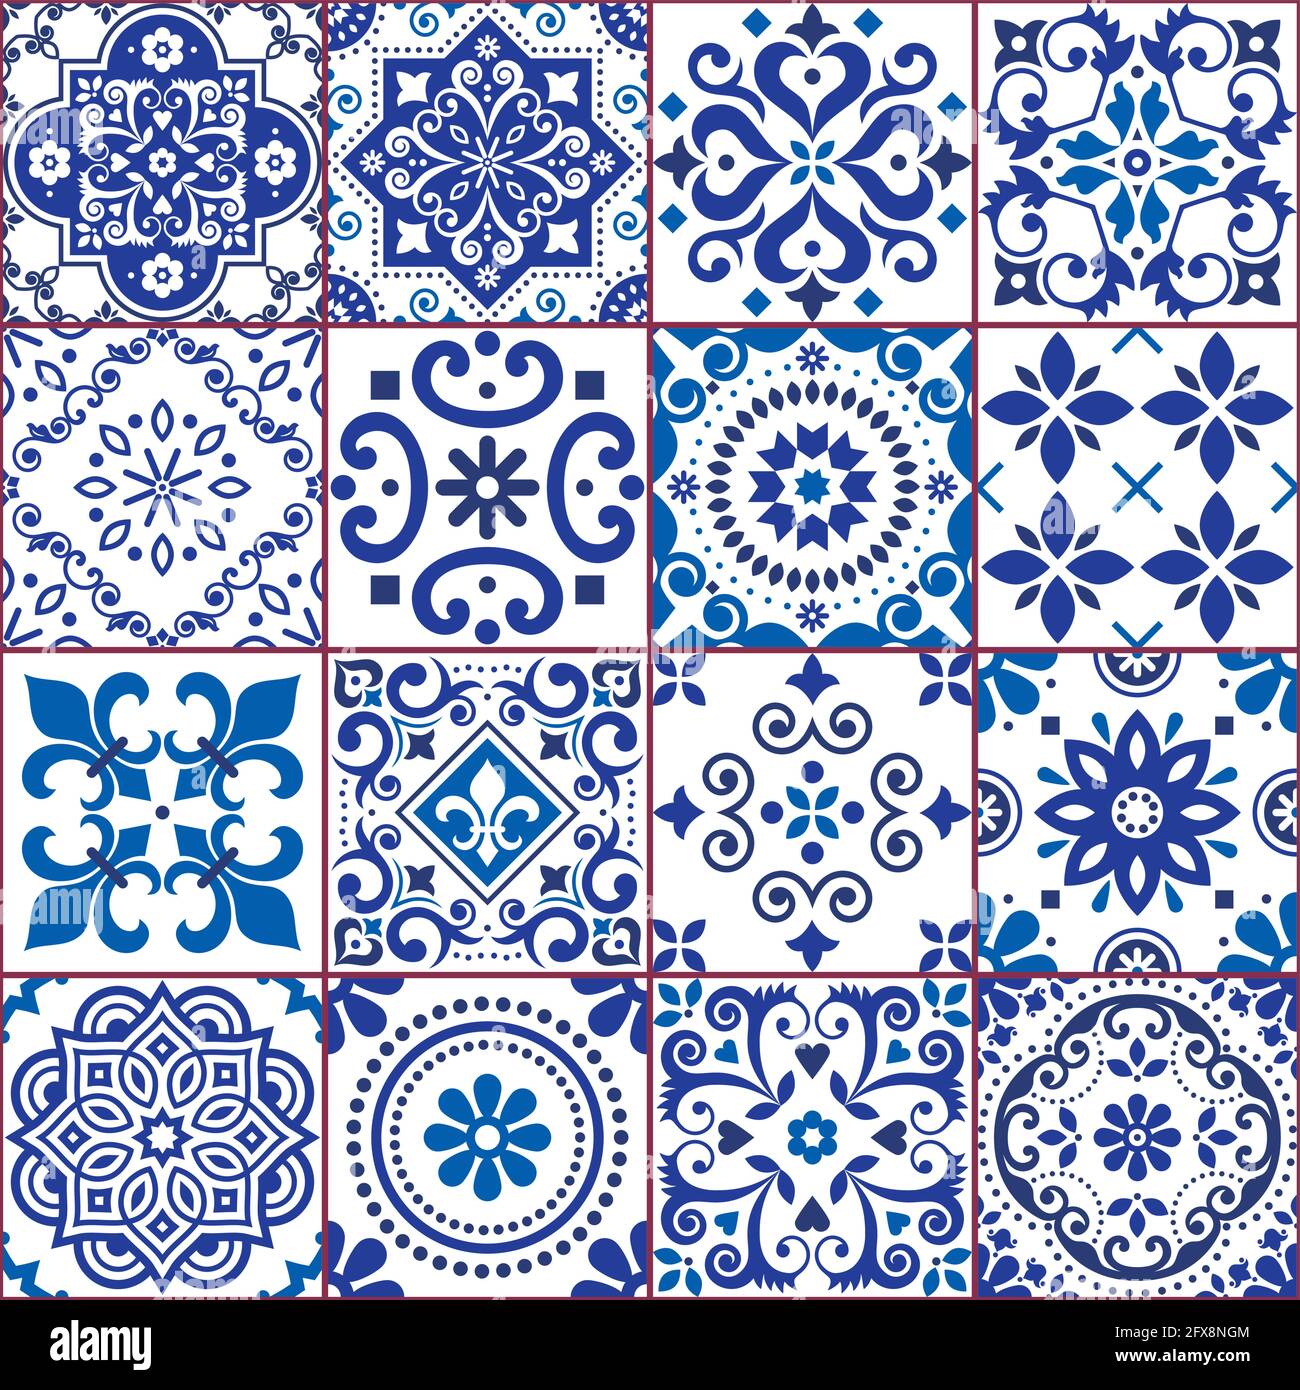 Portugiesische und spanische Azulejo Fliesen nahtlose Vektor-Muster-Kollektion in marineblau und weiß, traditionelle florale Design großen Satz von Fliesenkunst inspiriert Stock Vektor